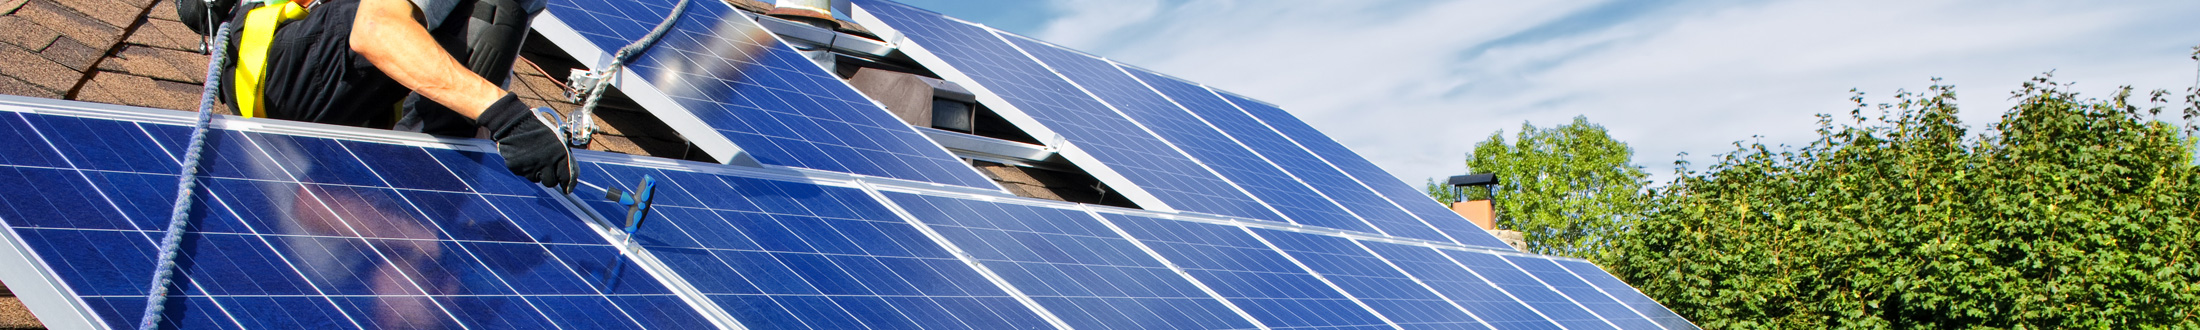 Energies renouvelables en Lozère : installation de panneaux photovoltaïques